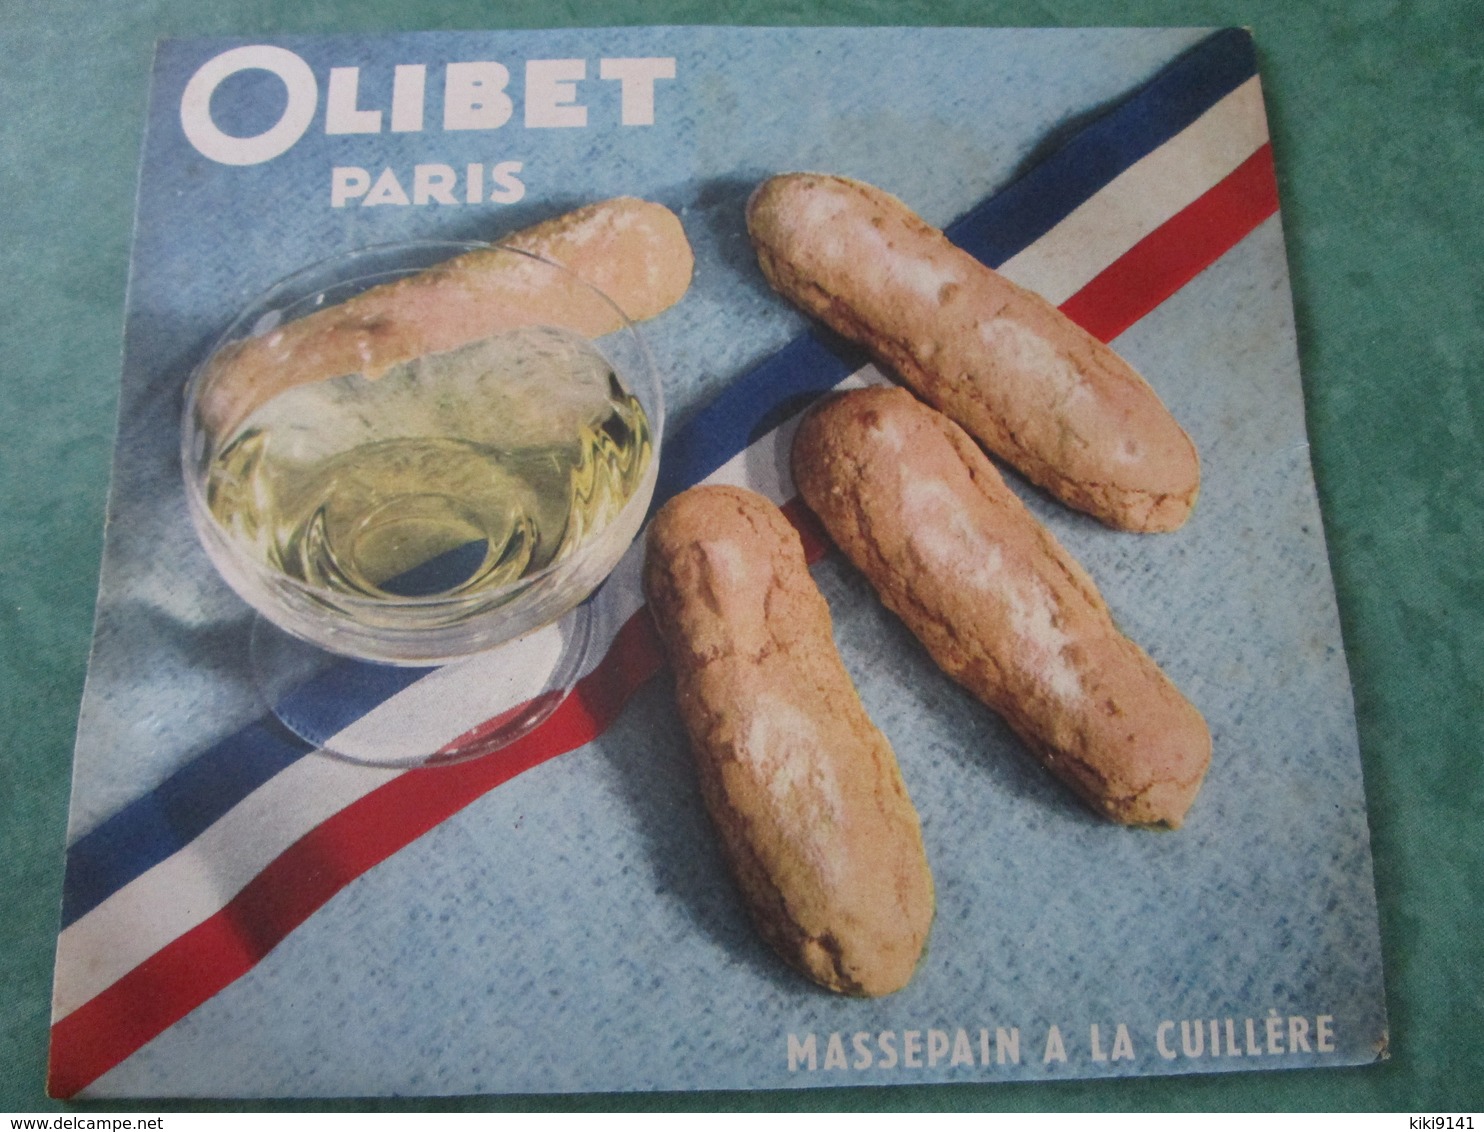 OLIBET Paris - MASSEPAIN A LA CUILLÈRE - Boite D'origine Pliée - Publicidad